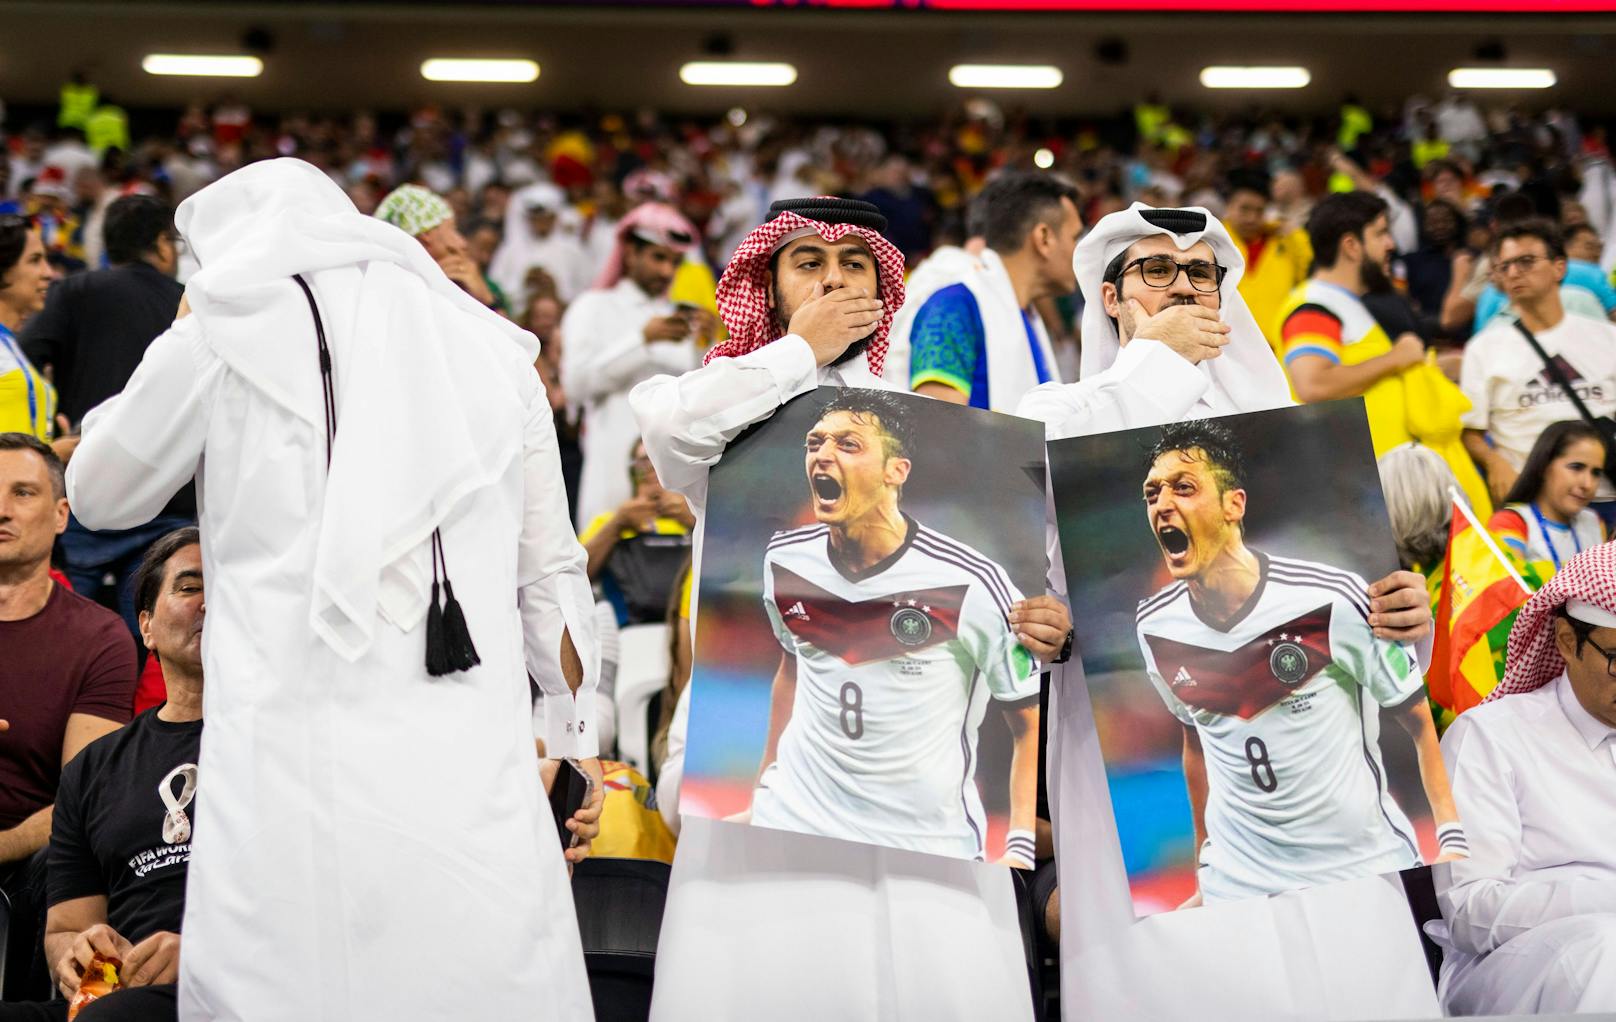 Katar-Fans mit einer höhnischen Özil-Botschaft an die deutschen Anhänger.